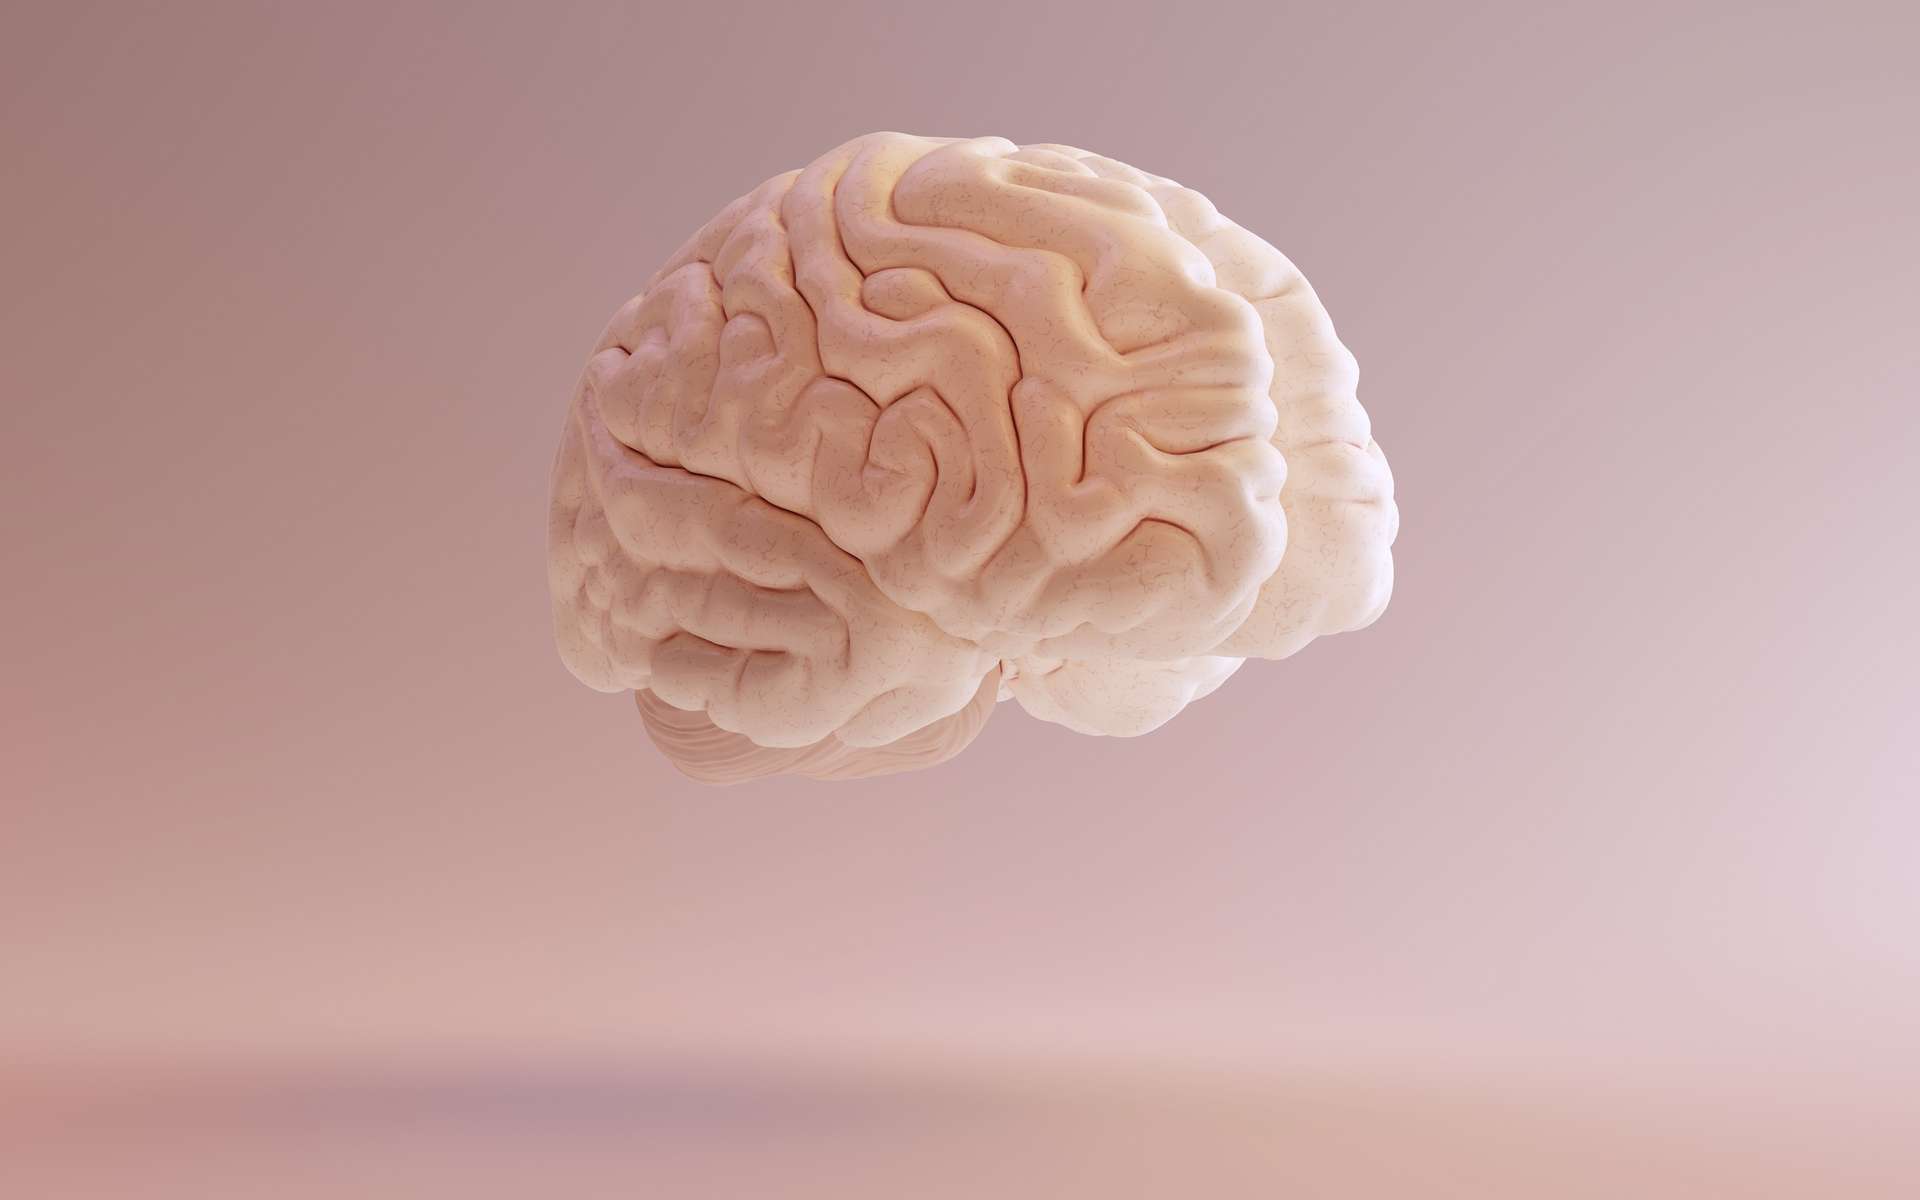 L'aphasie apparaît brutalement après une lésion cérébrale. © paul, Adobe Stock